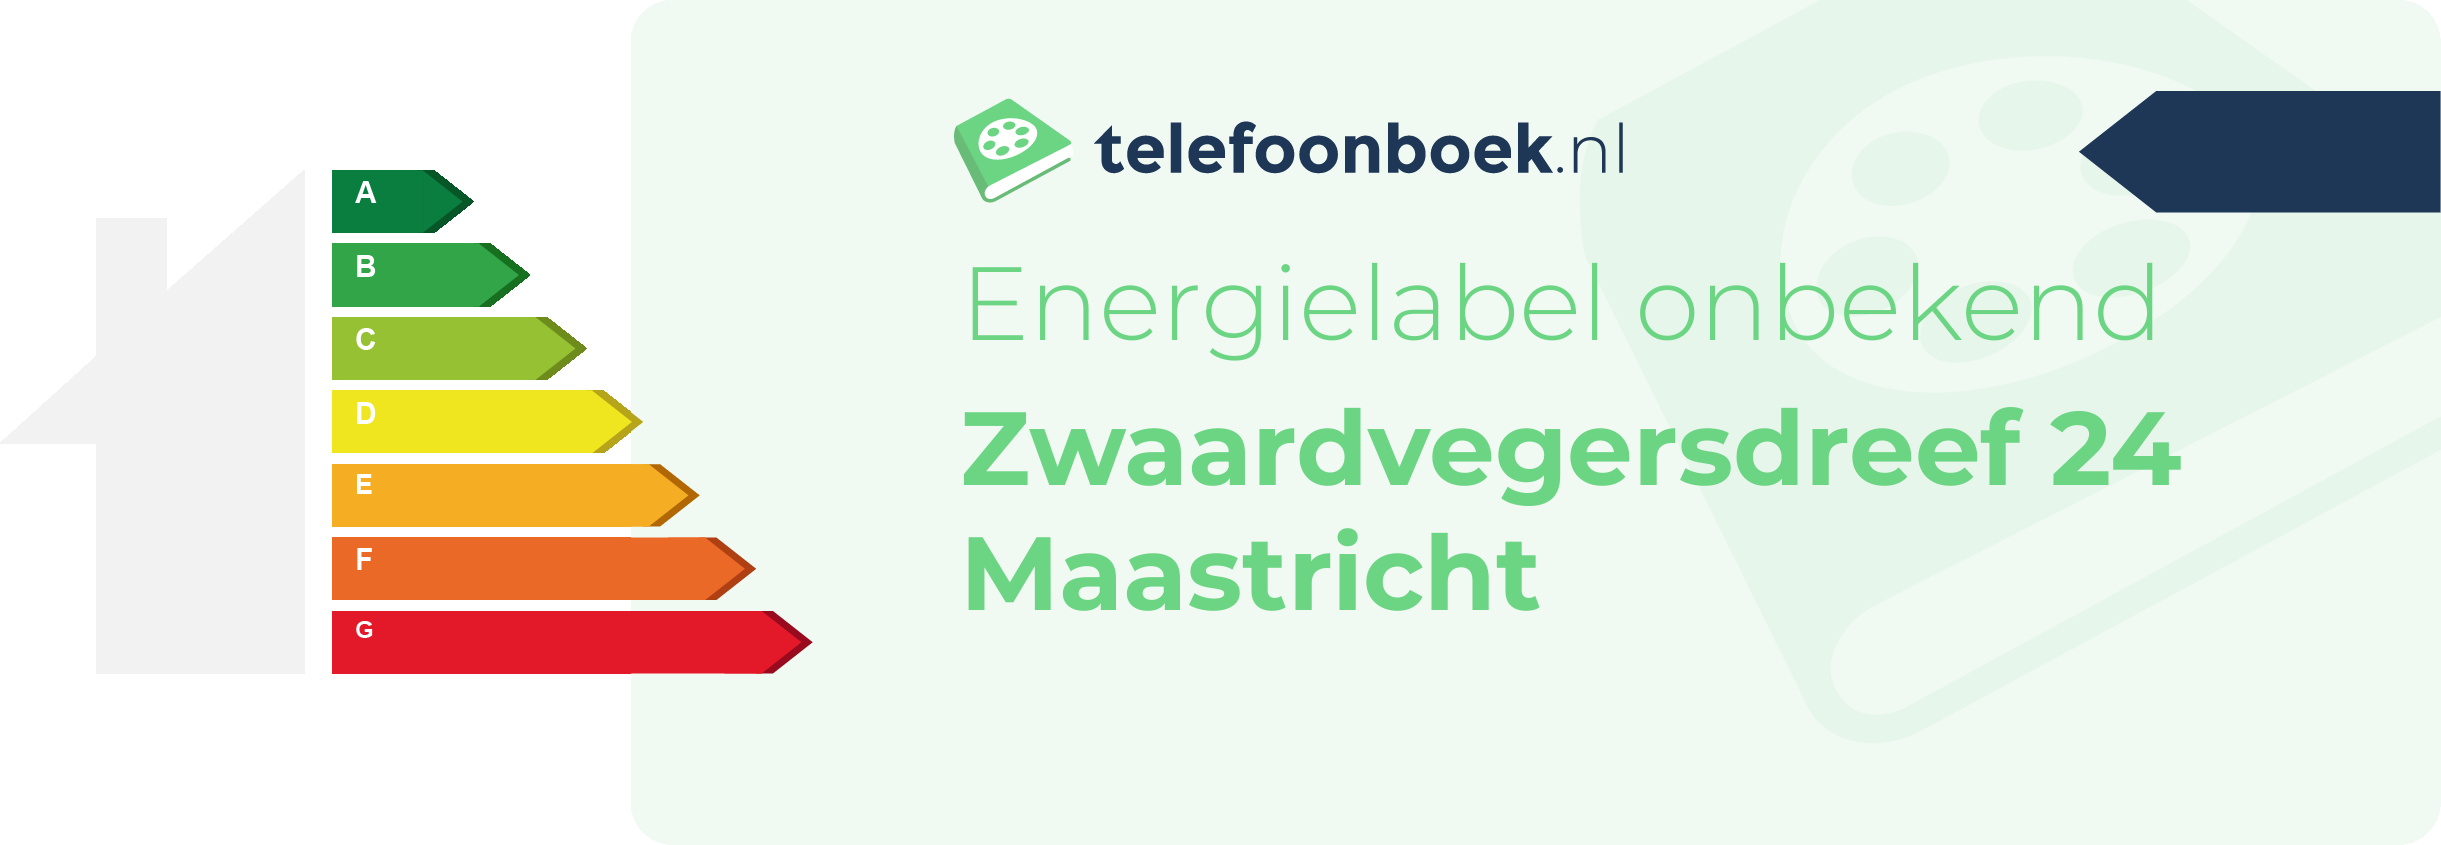 Energielabel Zwaardvegersdreef 24 Maastricht